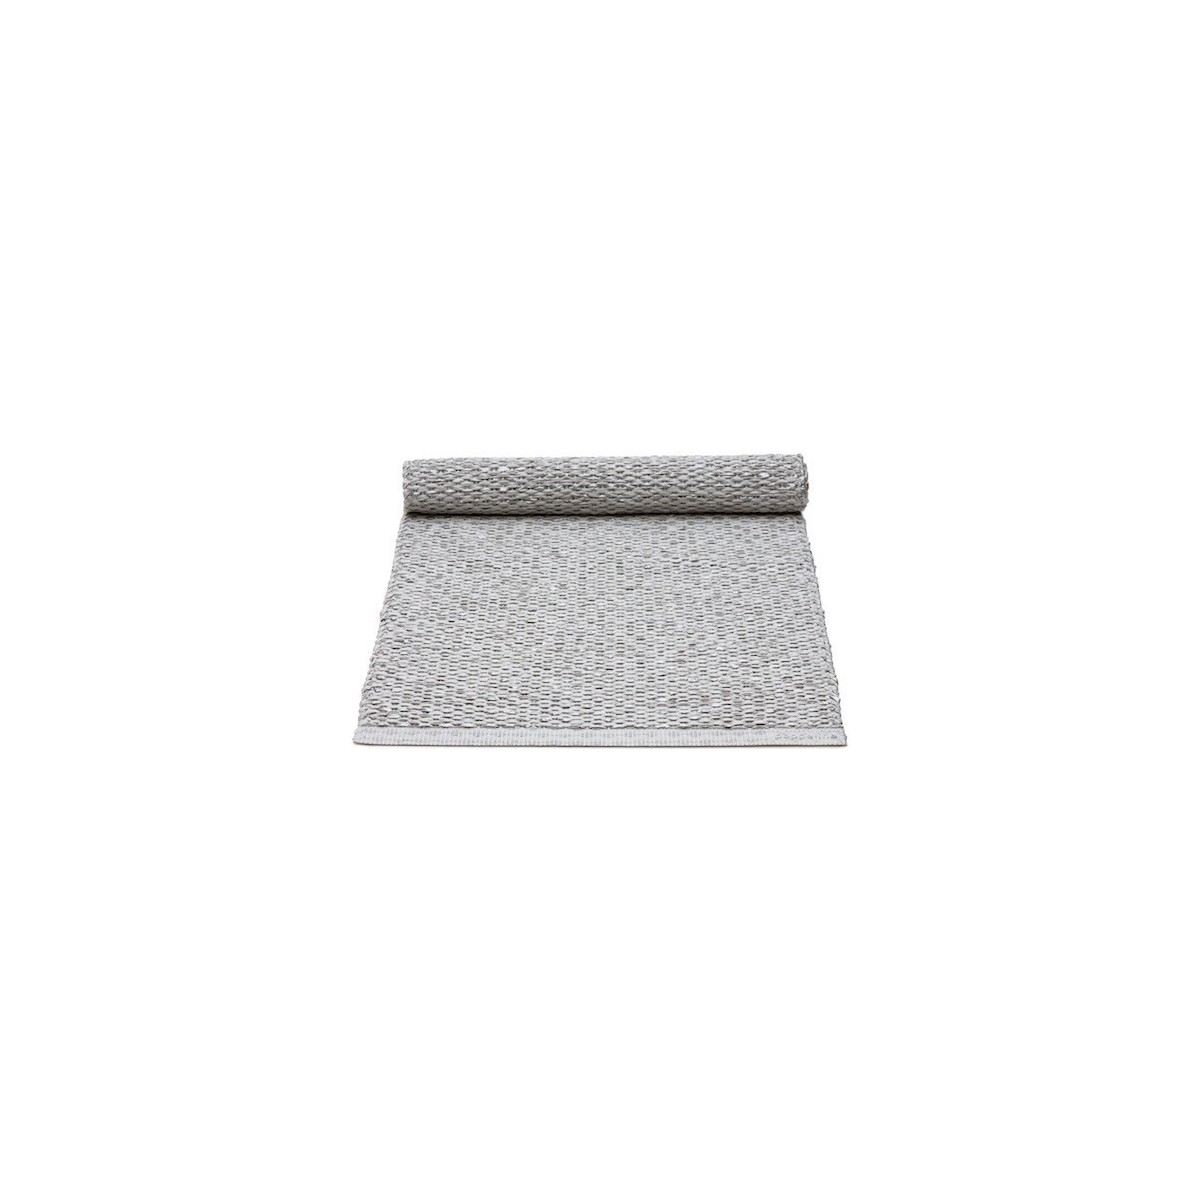 36x80cm - gris métallique / gris clair - chemin de table Svea